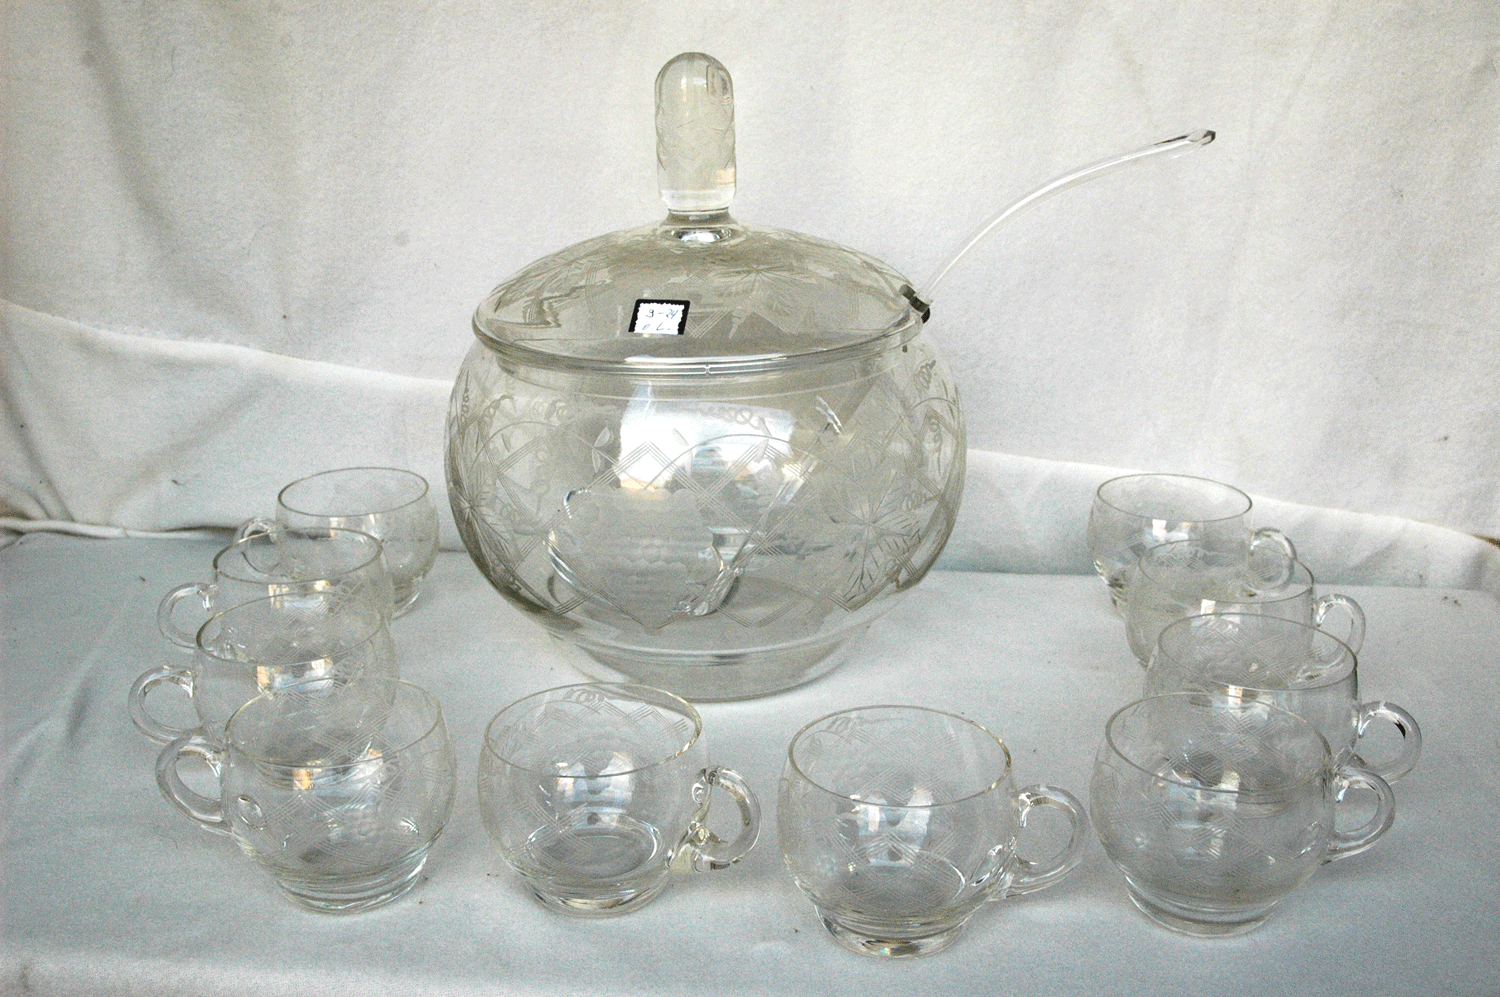 Bowlegefäß, Glas geschliffen, mit 10 Tassen und Glaskelle, kleine Macke